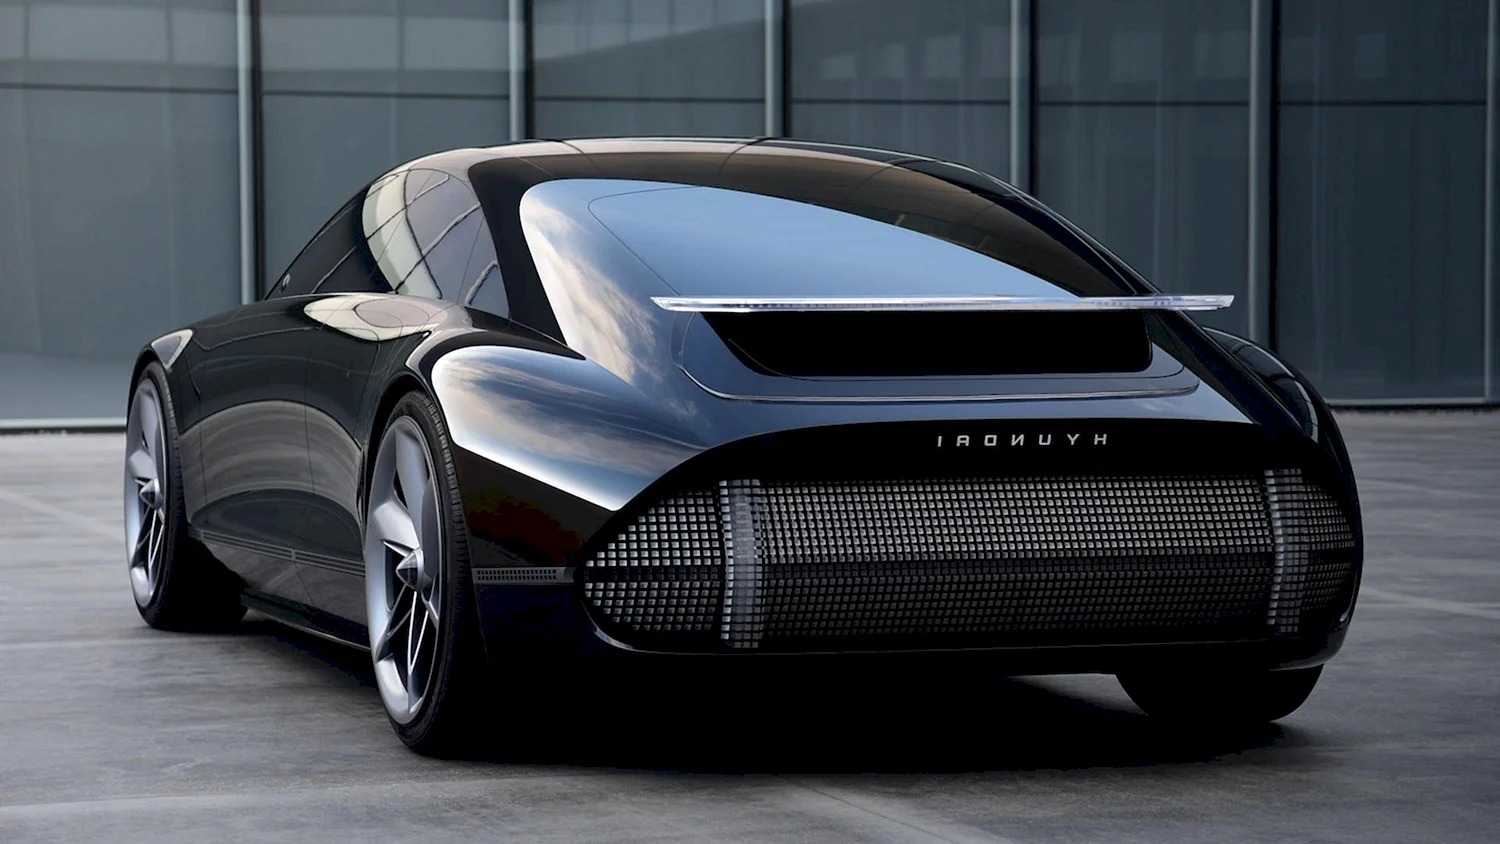 Hyundai Concept 2020 Prophecy